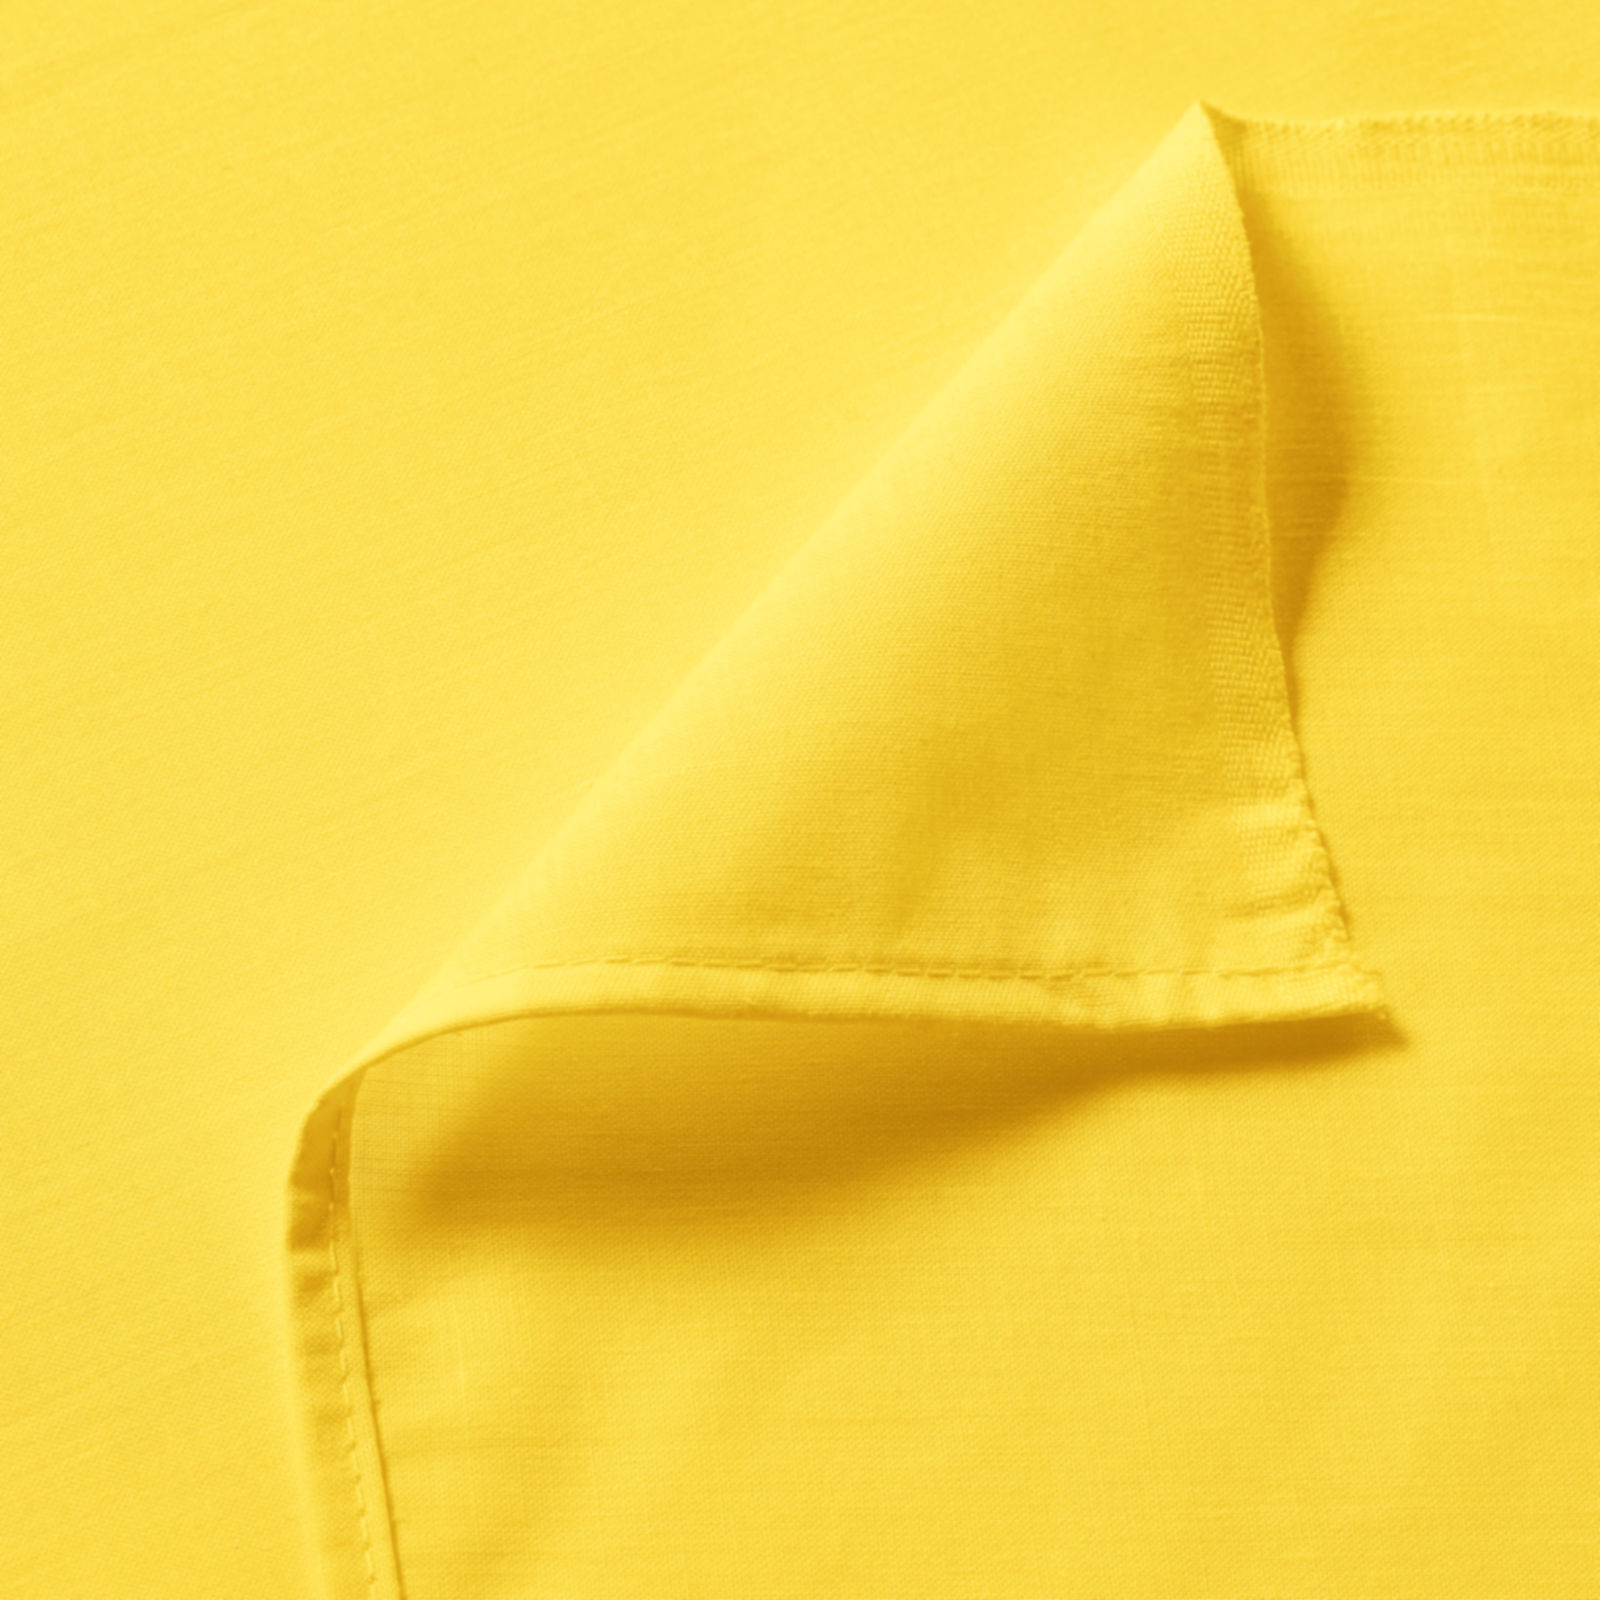 Bavlněné prostěradlo - žluté - plachta